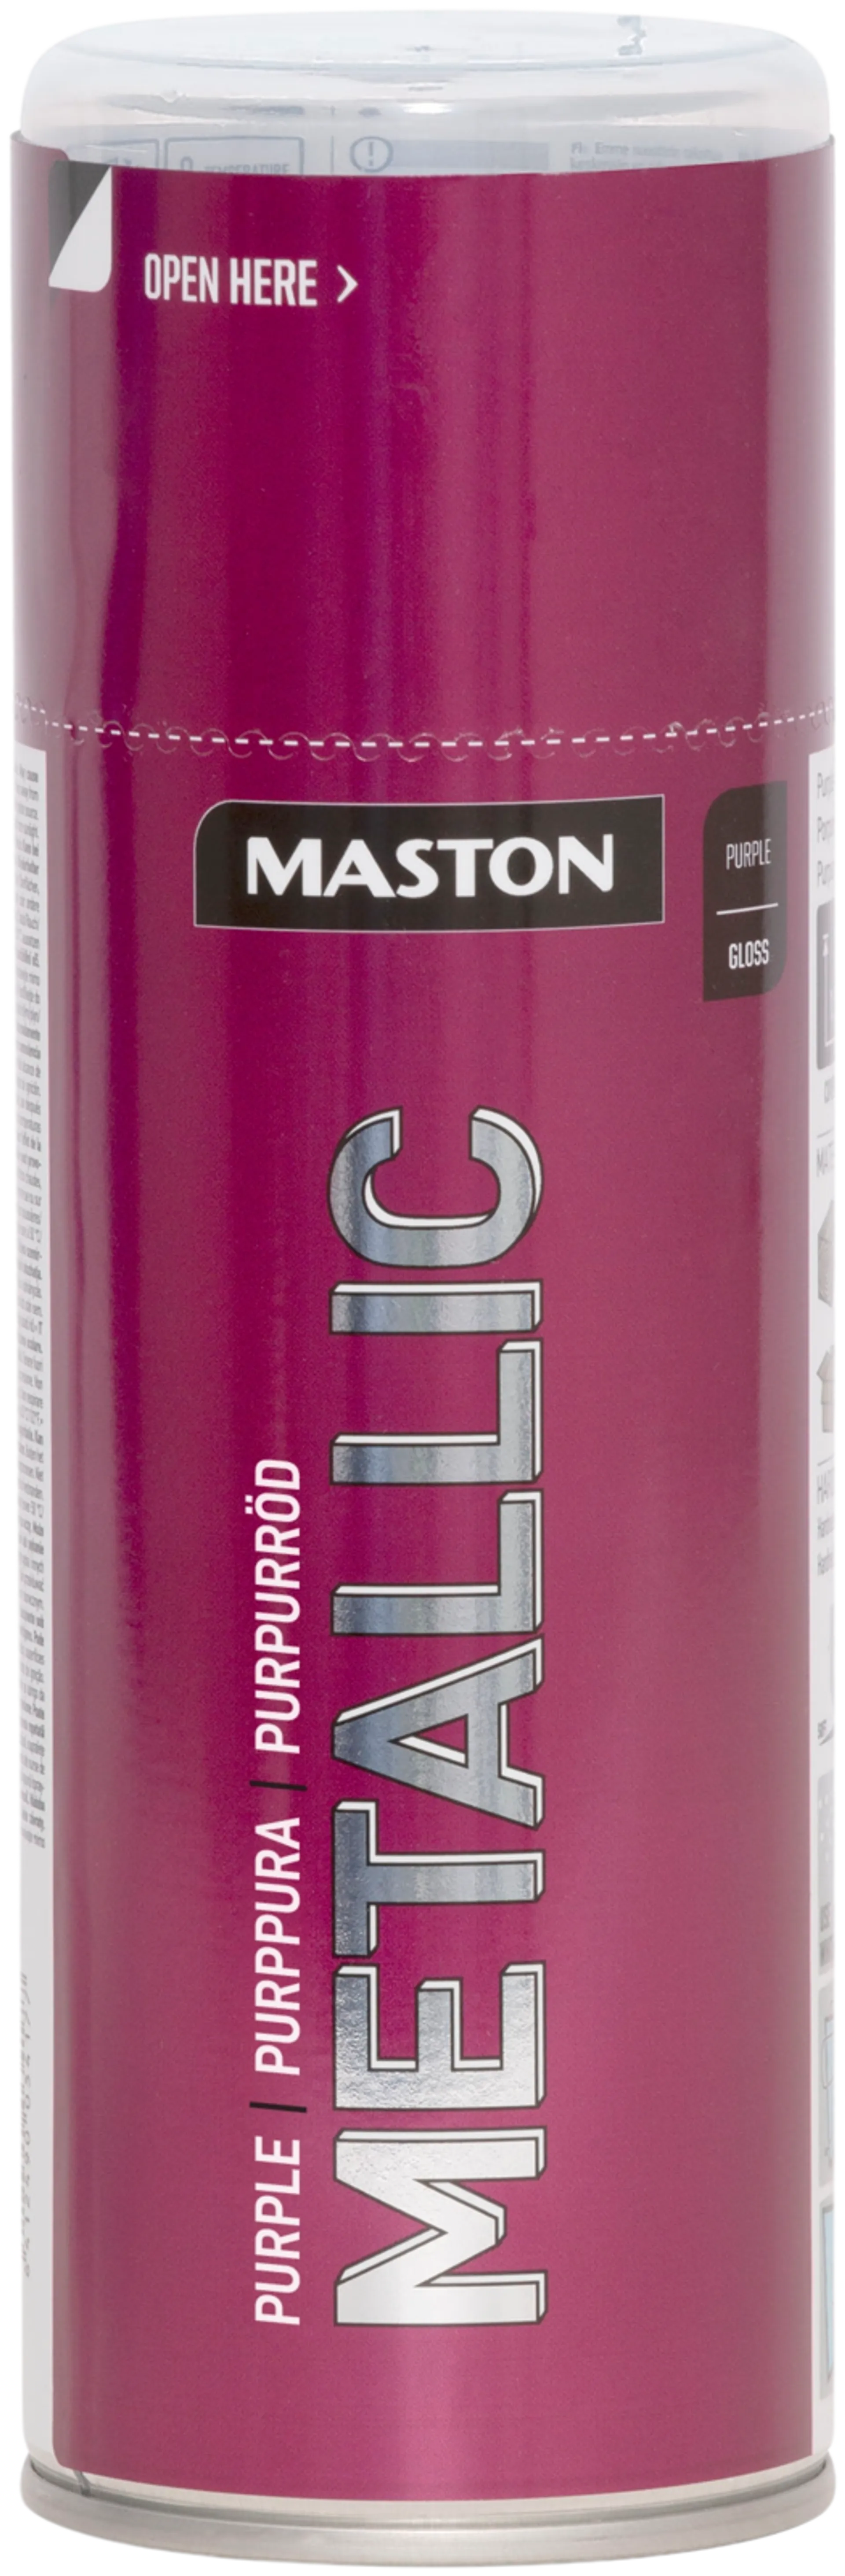 Maston Metallic spraymaali purppuranpunainen 400ml